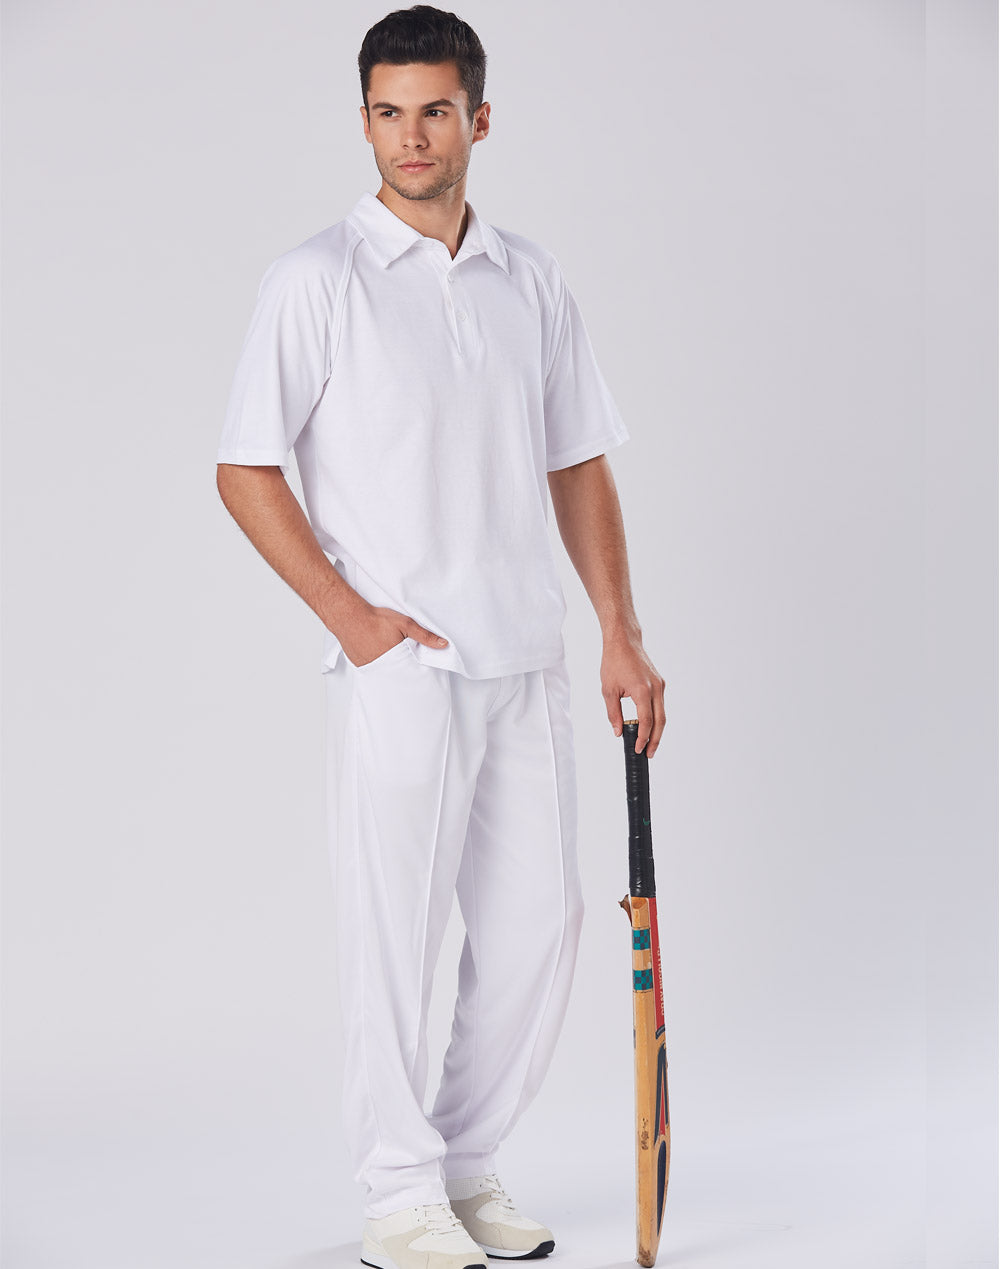 Winning Spirit-Men's Truedry Mesh Knit Short Sleeve Cricket Polo-PS29